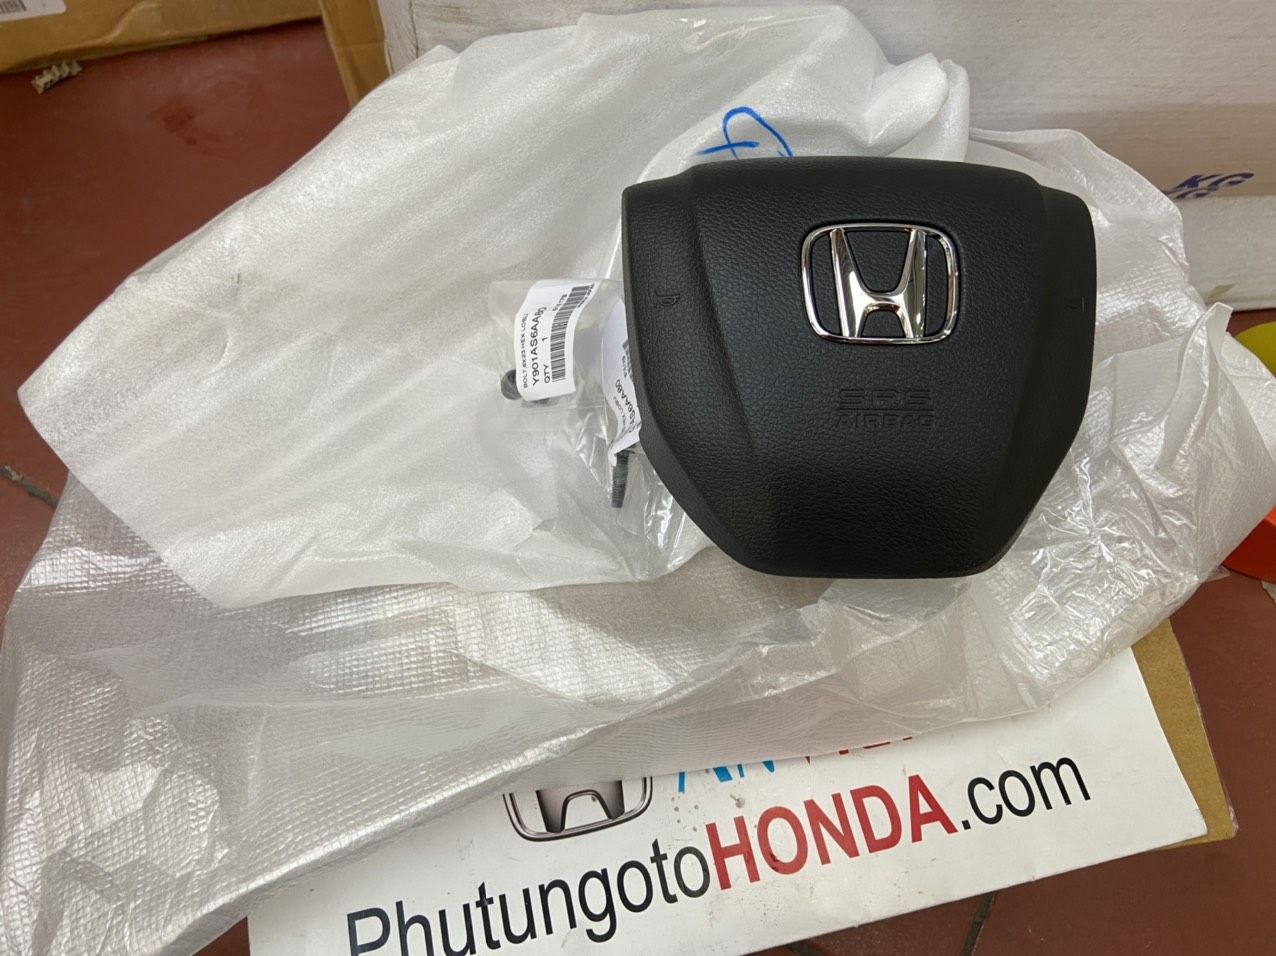 Túi khí bên lái xe Honda CIVIC 2016 đến 2022